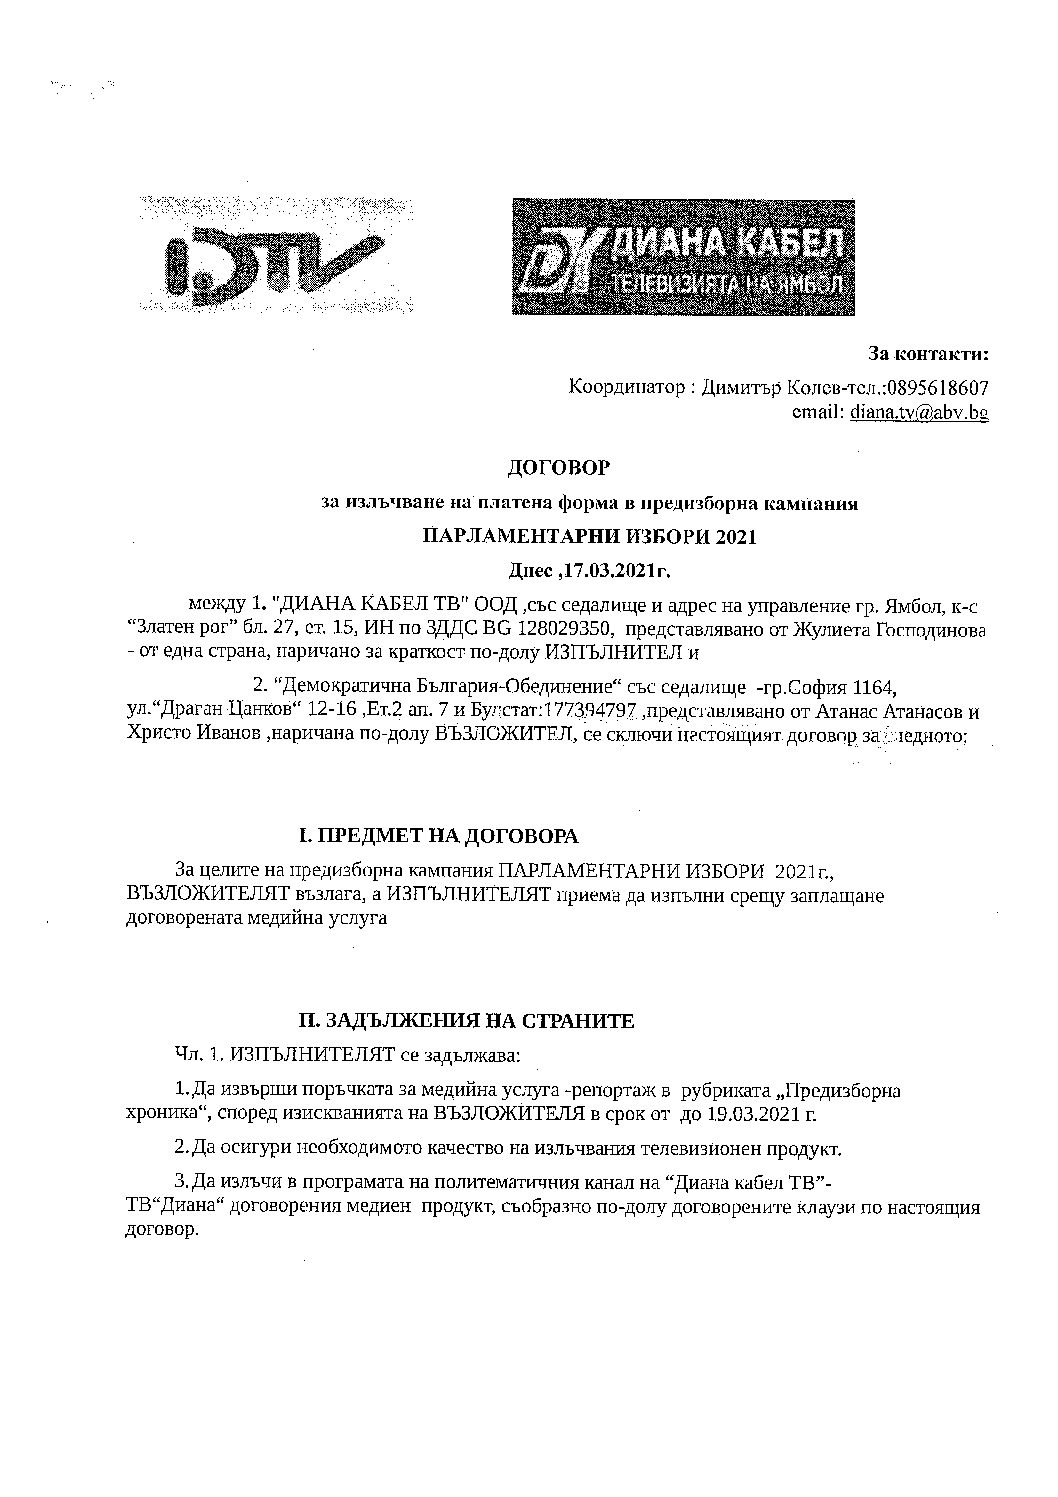 Парламентарни избори 2021-договор за доставка на медийни услуги с Демократична България Обединение